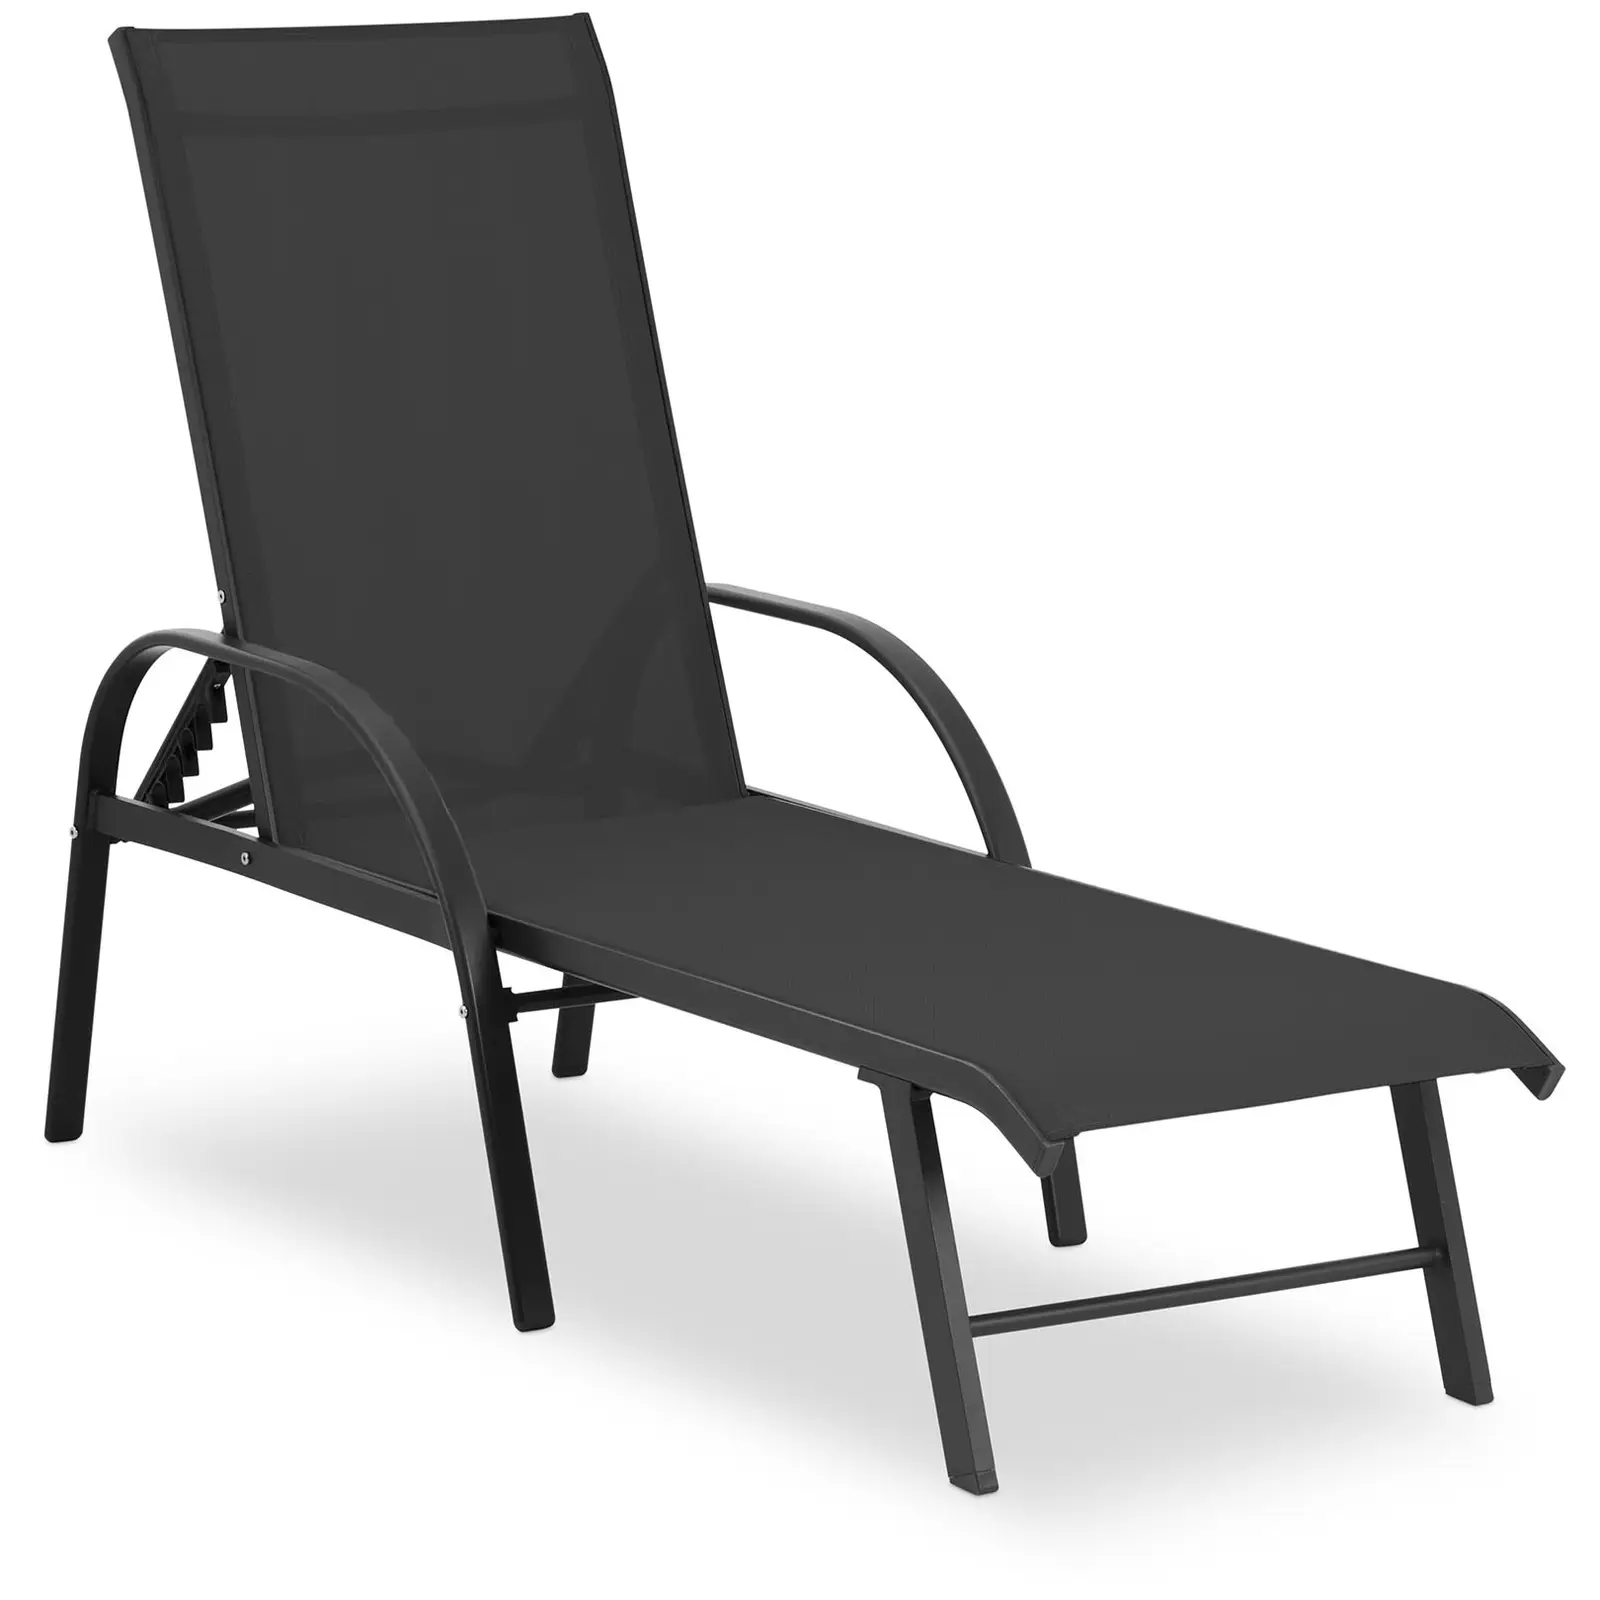 Chaise longue de jardin - Noire - Structure en aluminium - Dossier réglable